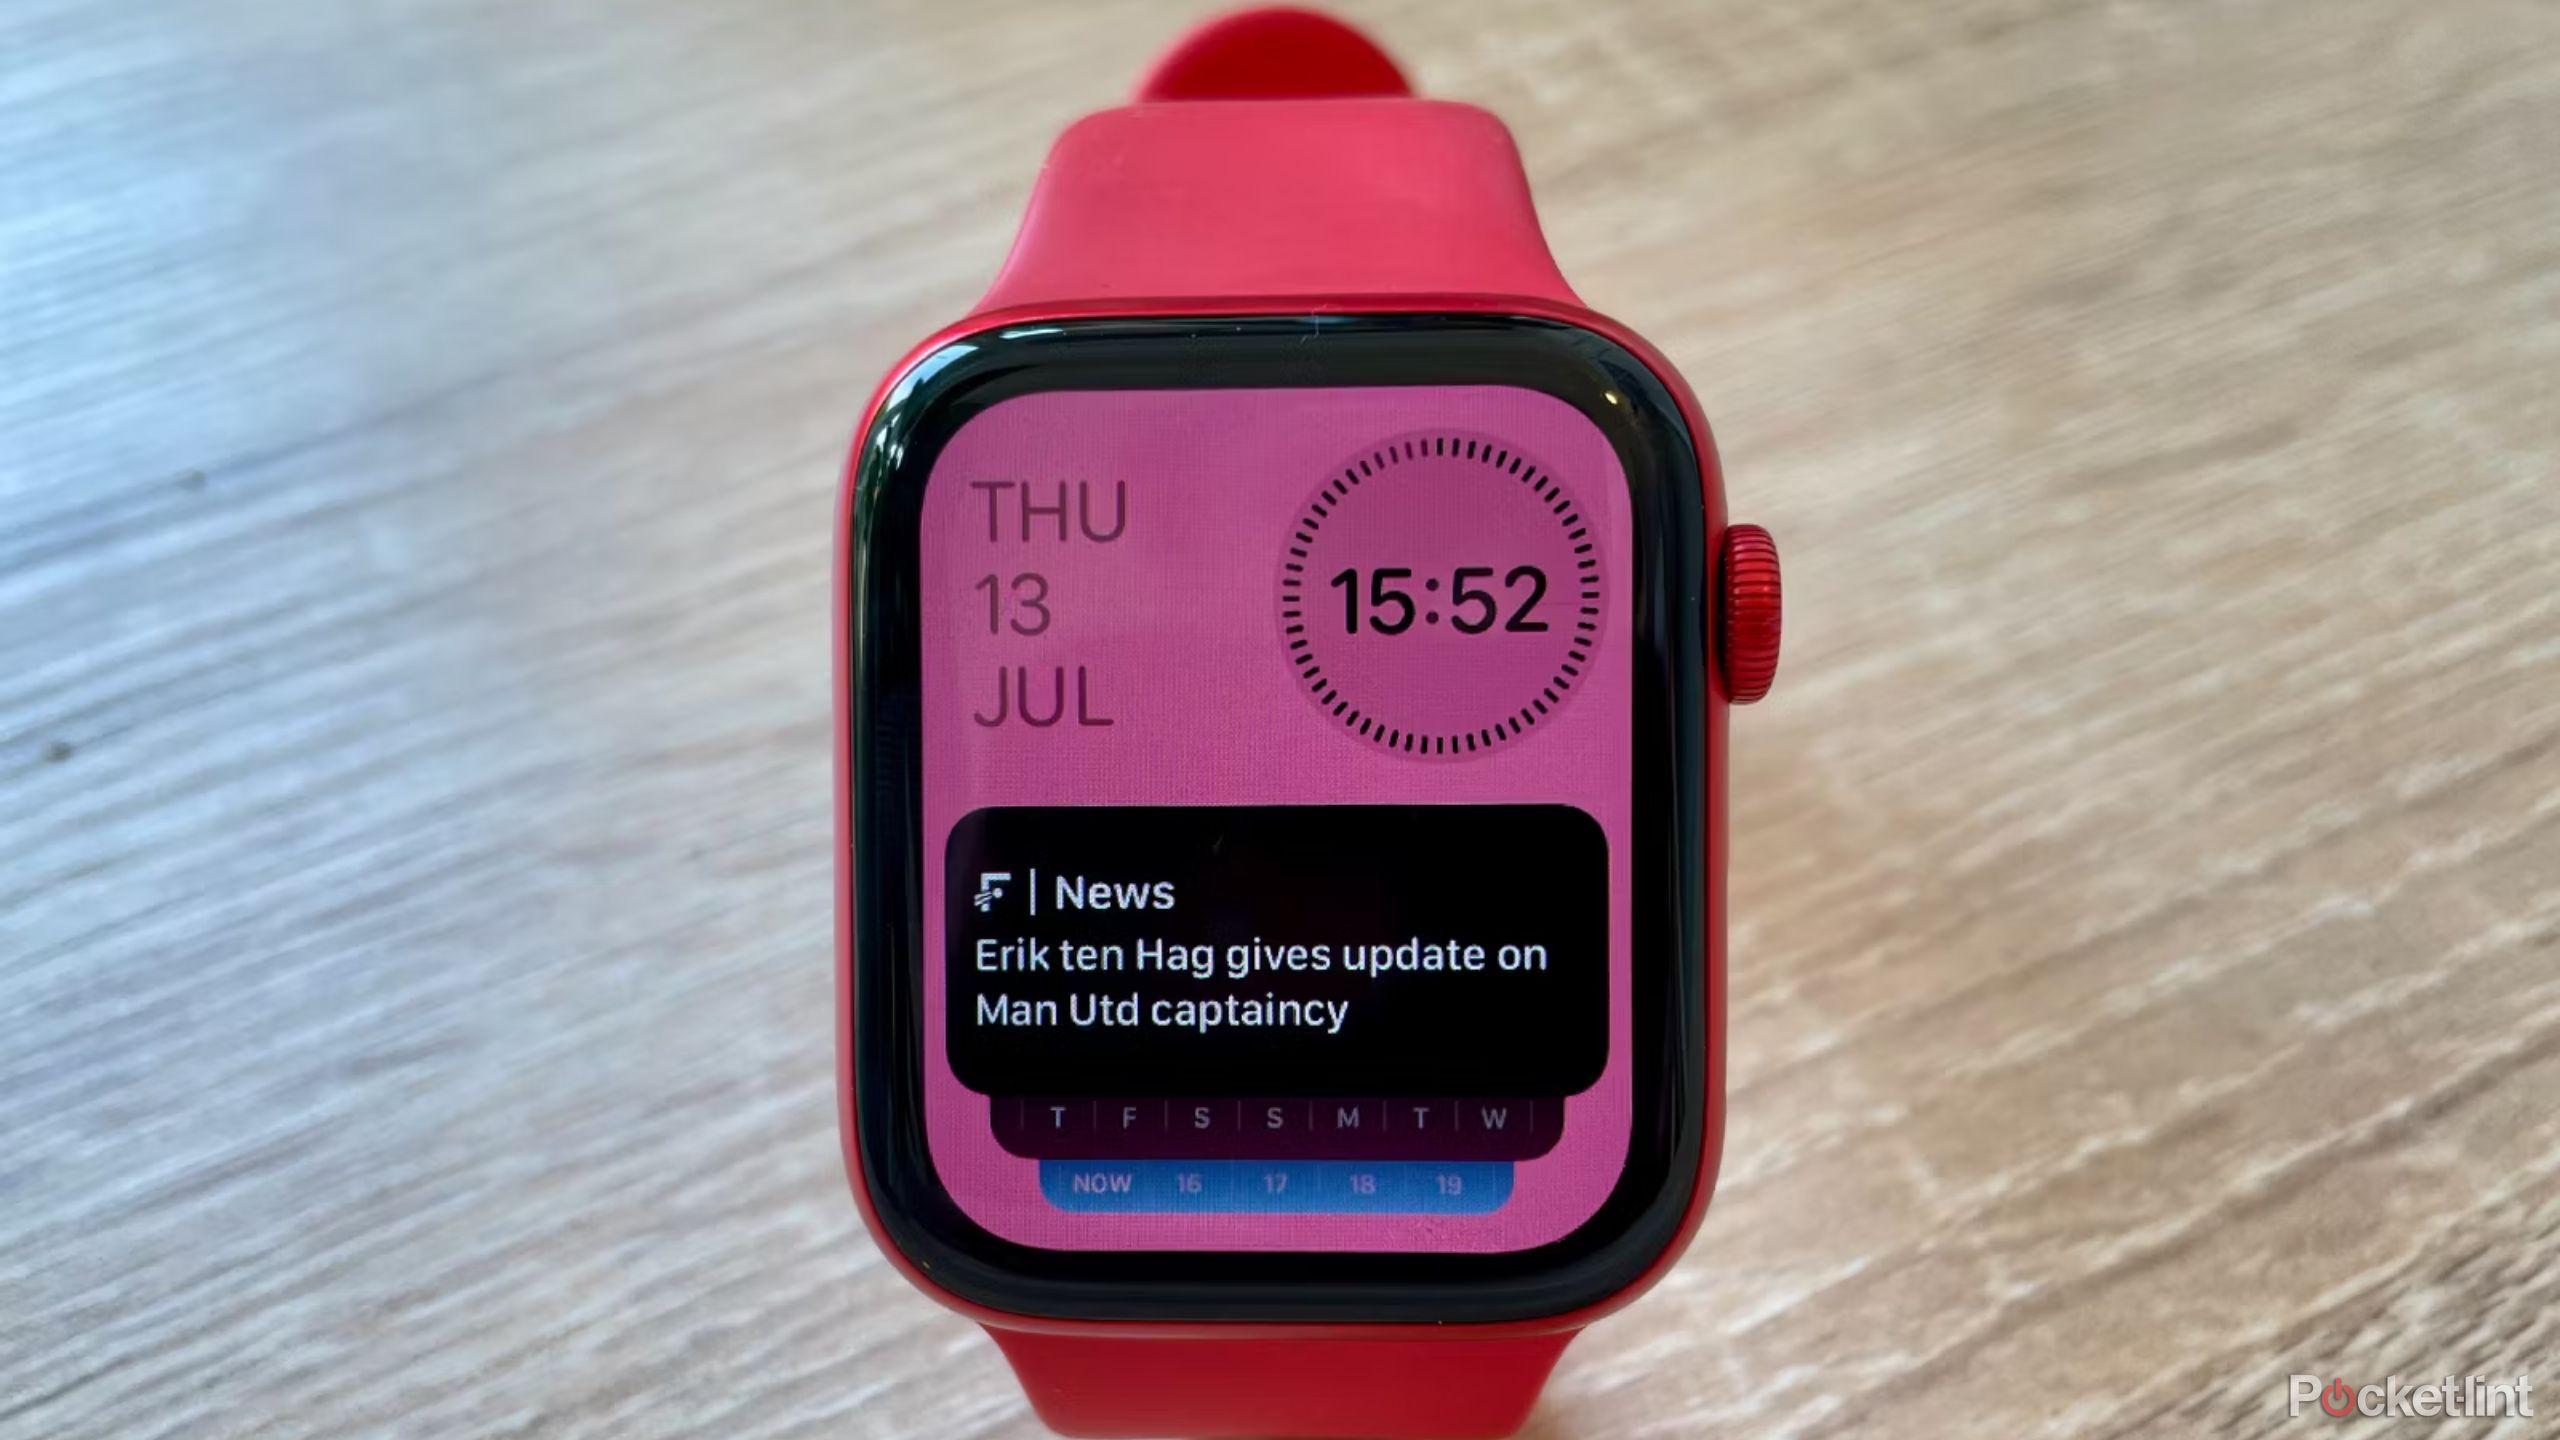 widgets smart stack on an apple watch